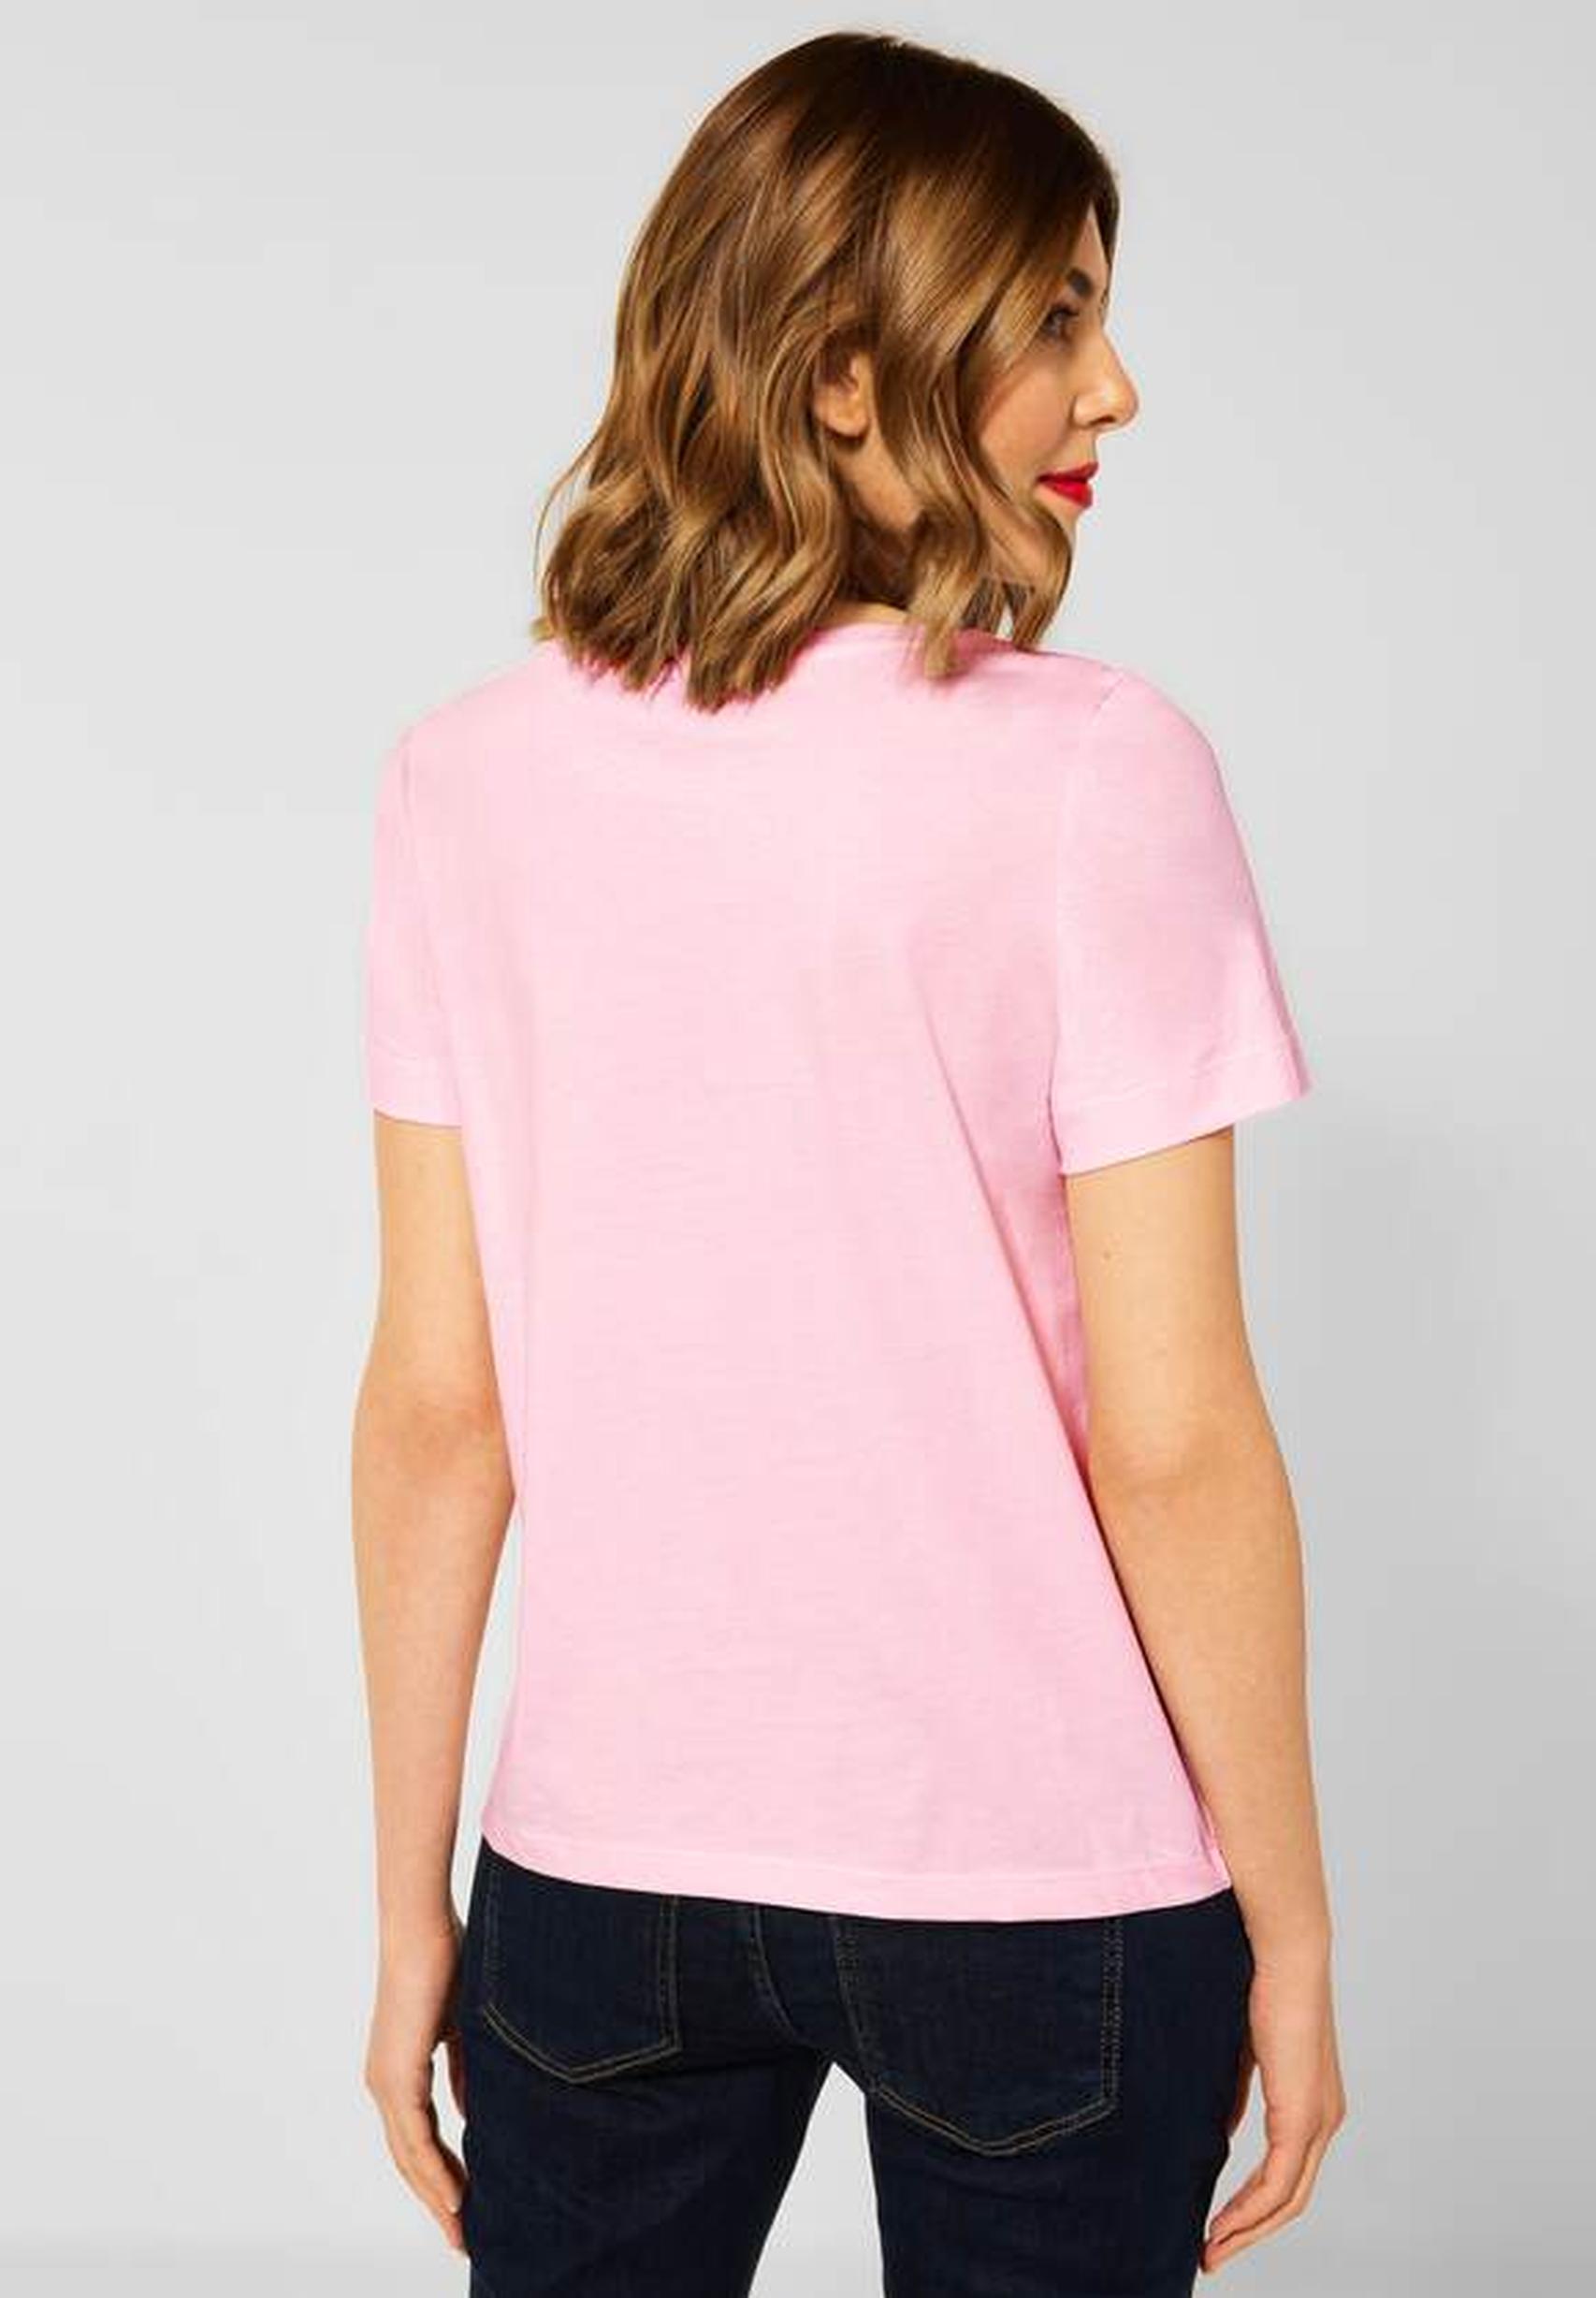 Trendiges T-Shirt Kollektion aus rose - der Street icy von in One 317605